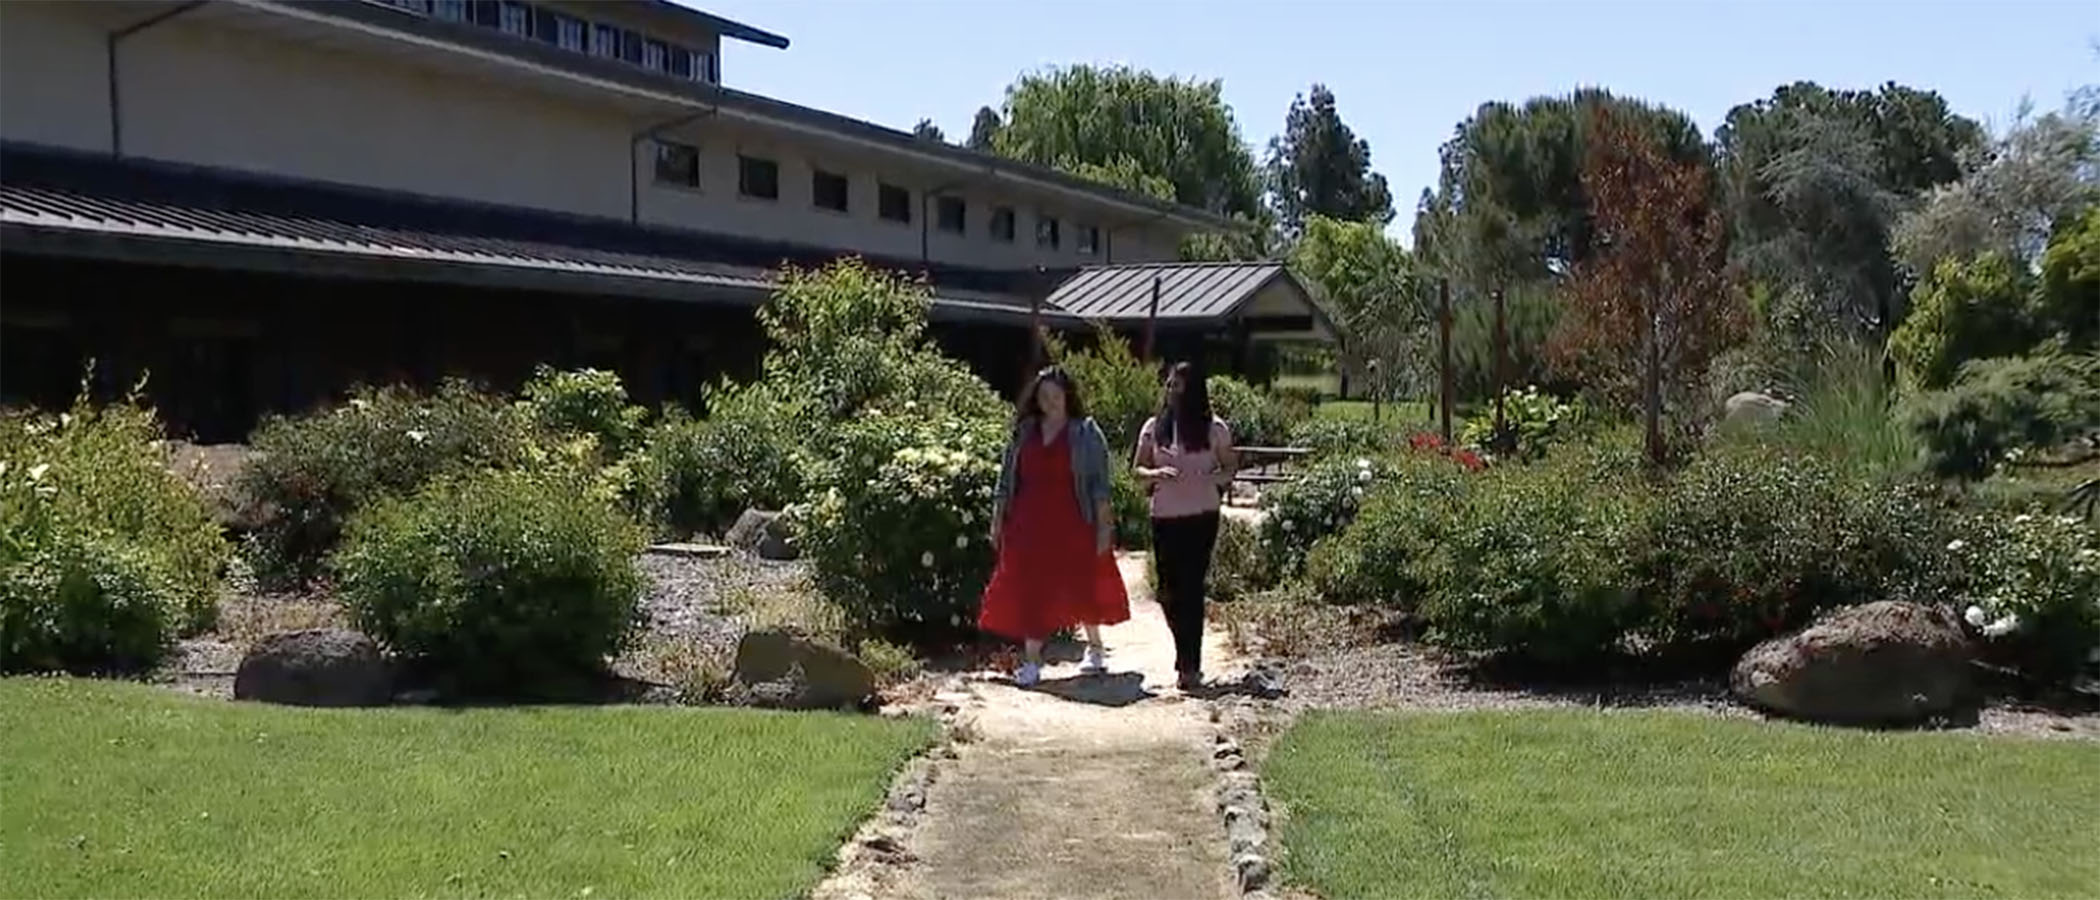 Two women walking through winery garden